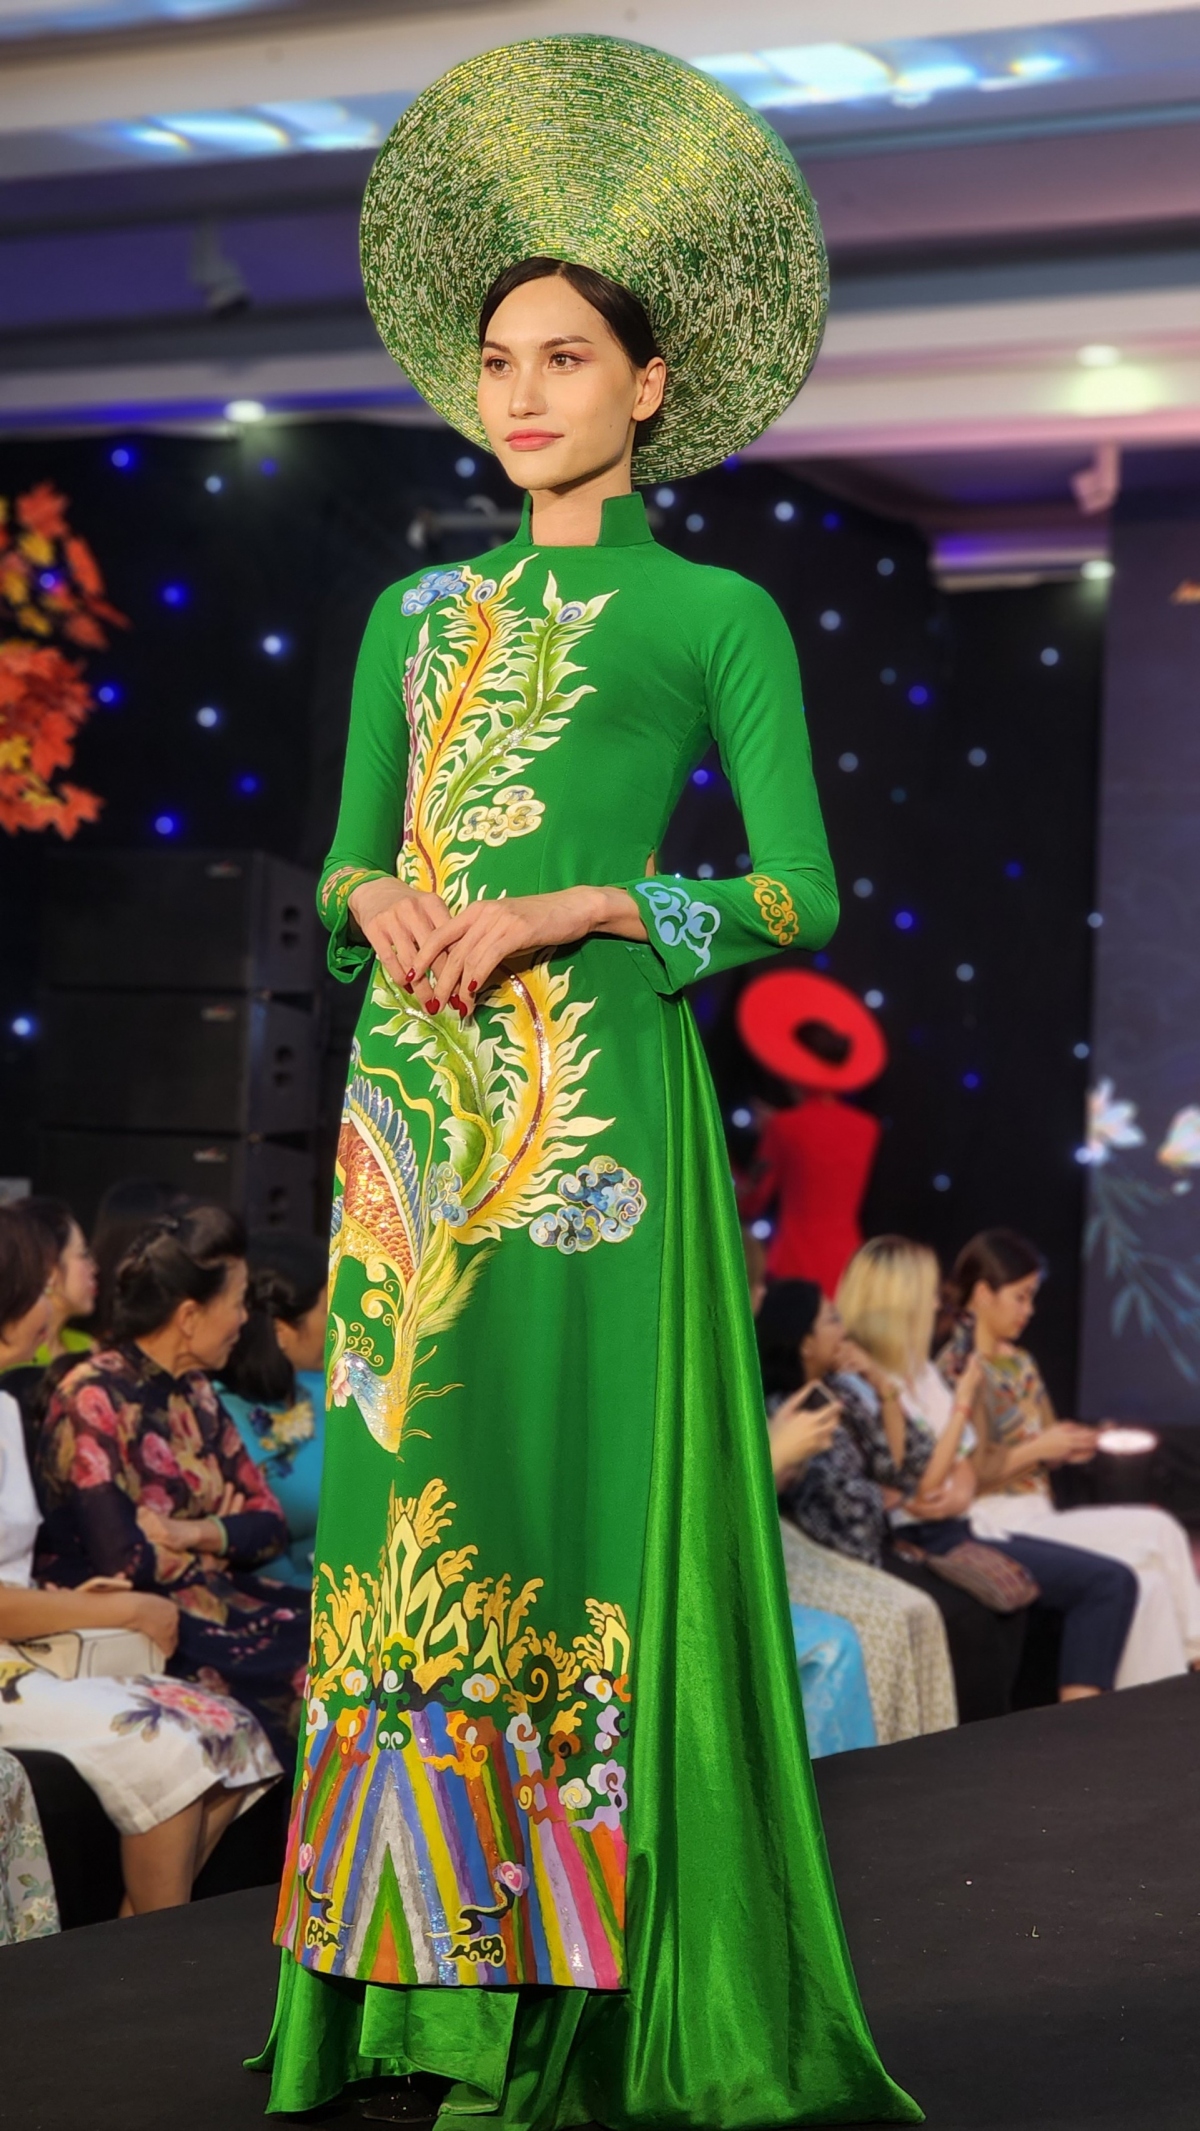 kimono-ao dai fashion show highlights vietnam-japan friendship picture 3